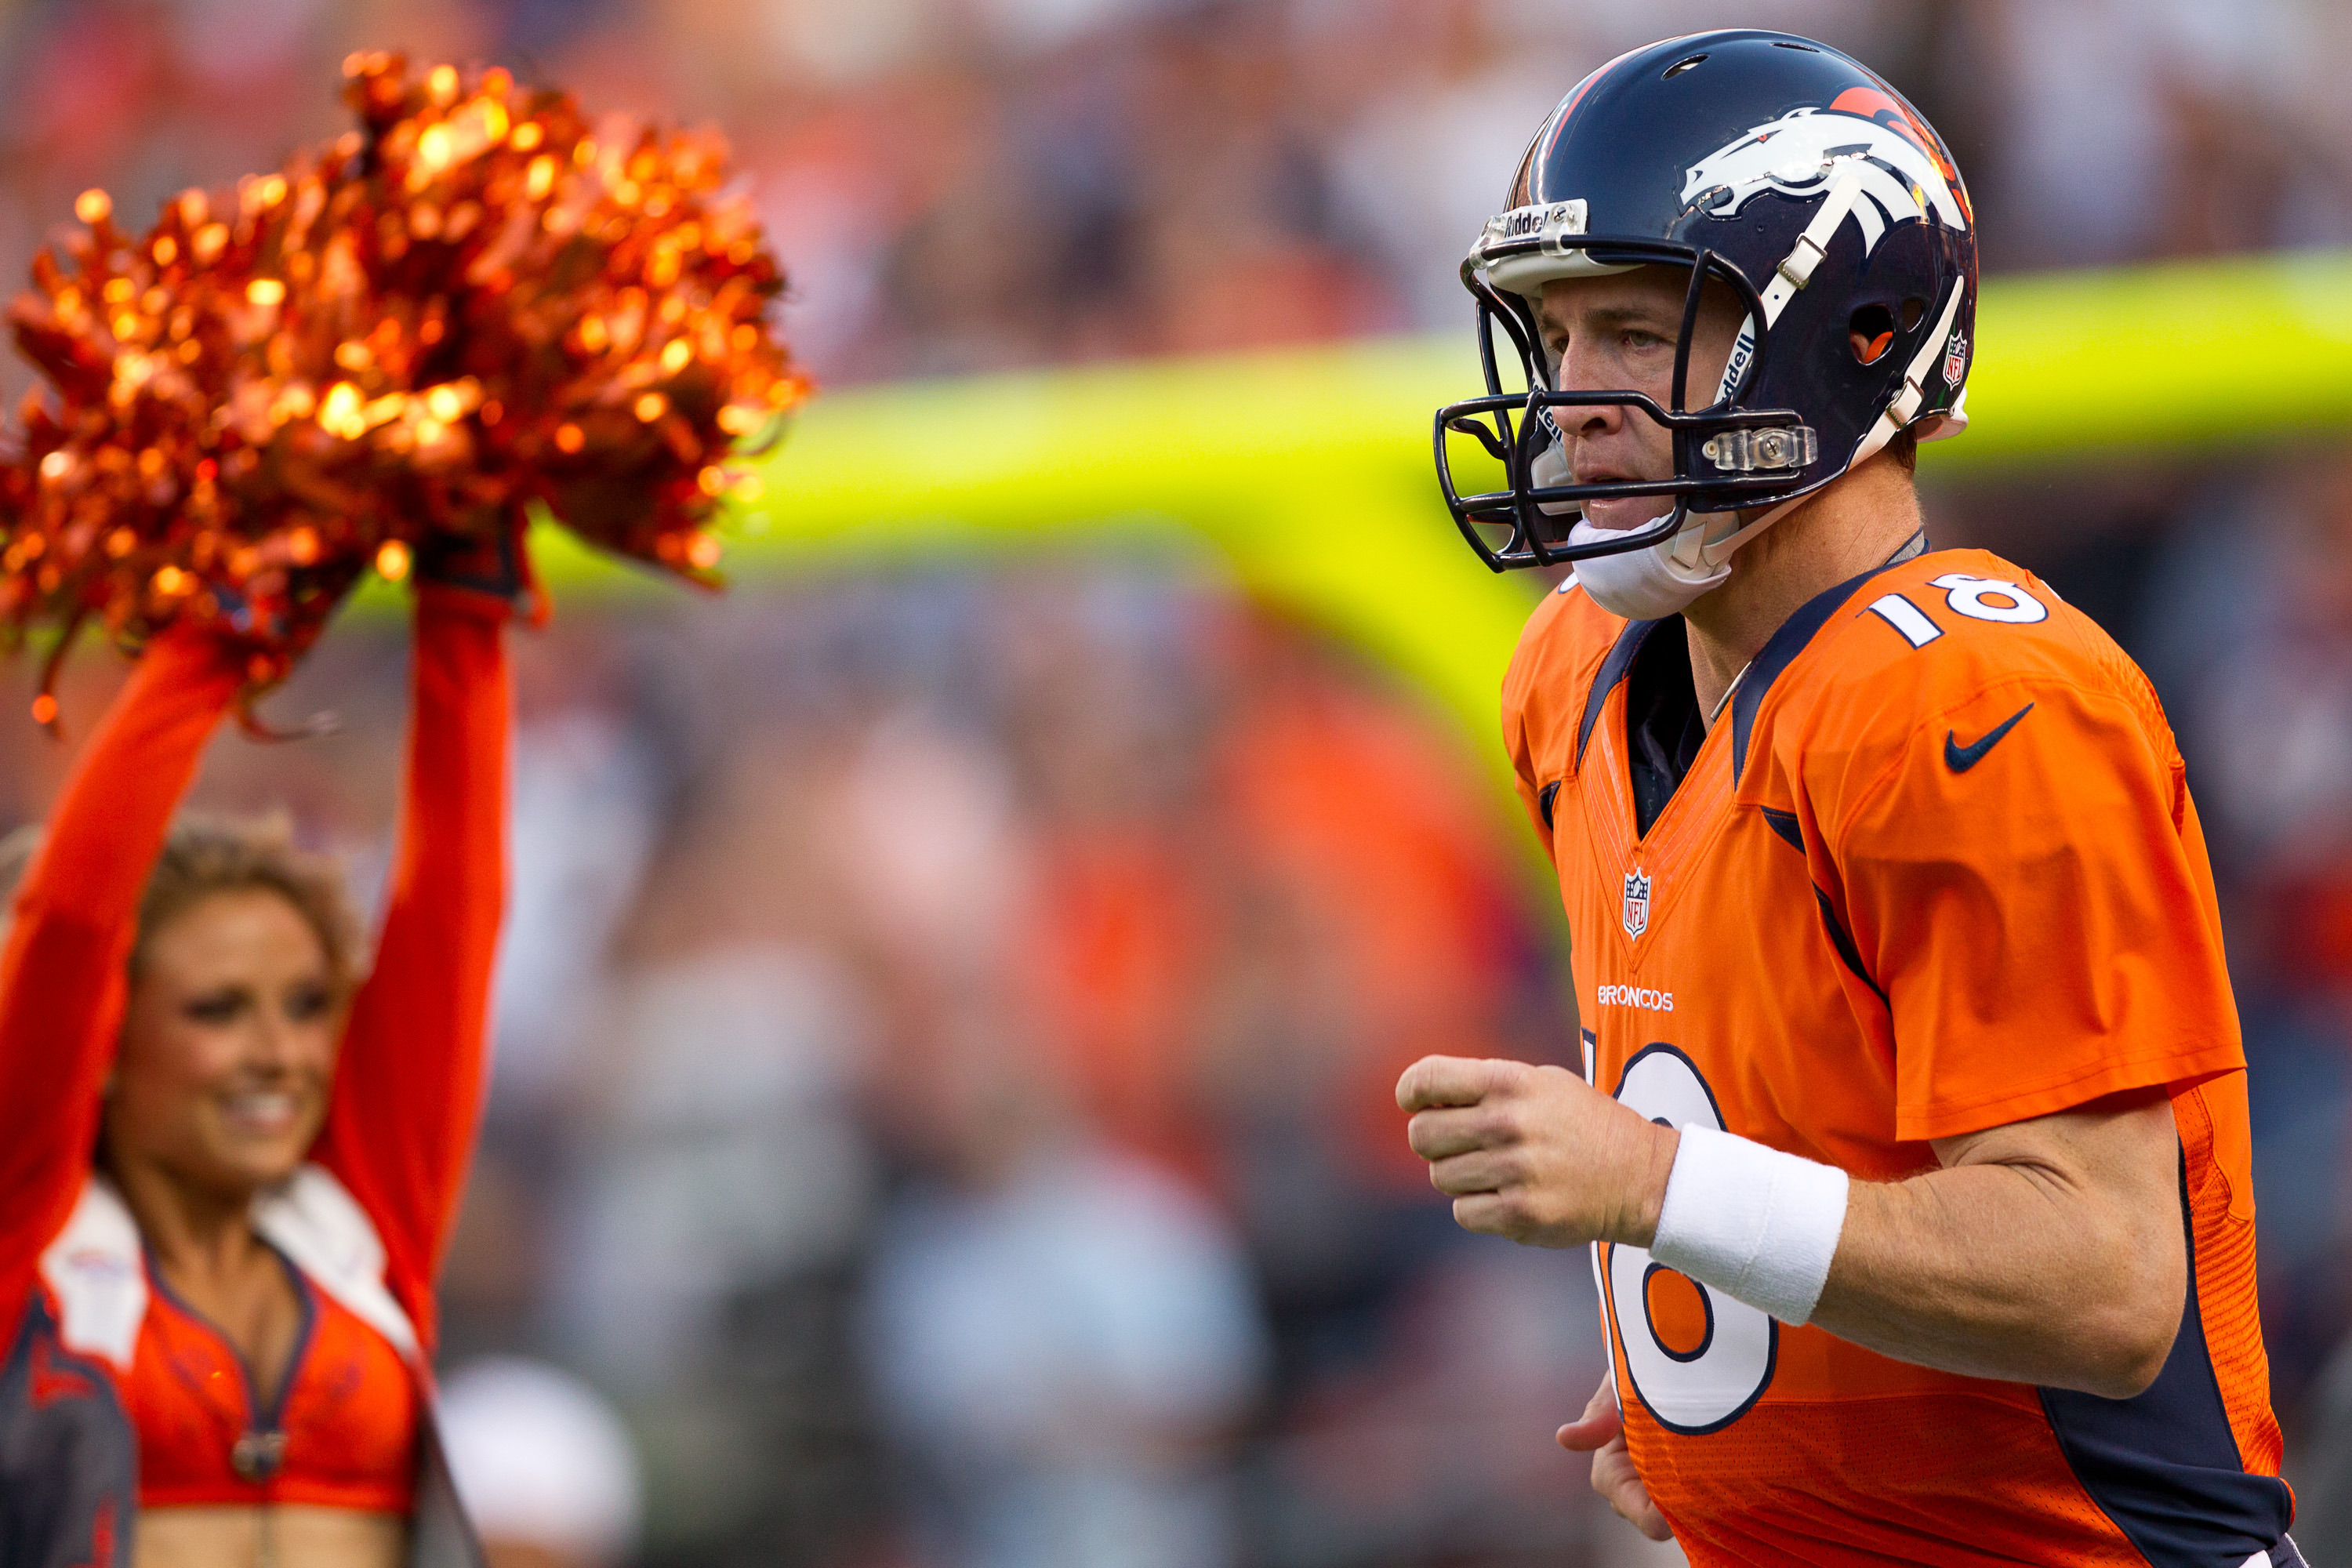 NWT Peyton Manning #18 Denver Broncos 2016 Super Bowl 50 Jersey